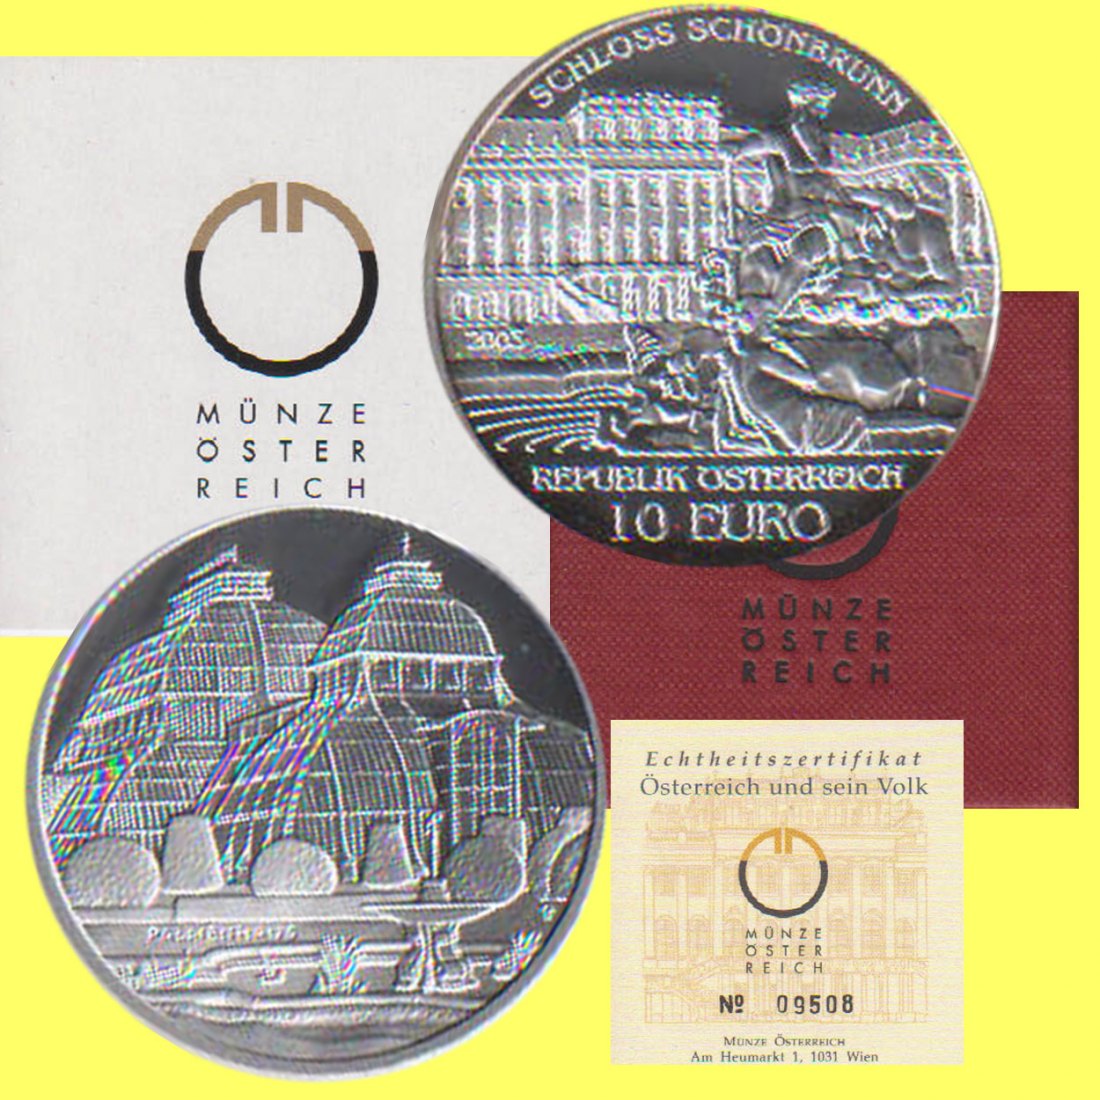  Offiz. 10 Euro Silbermünze Österreich *Schloss Schönbrunn* 2003 *PP* max 50.000St!   